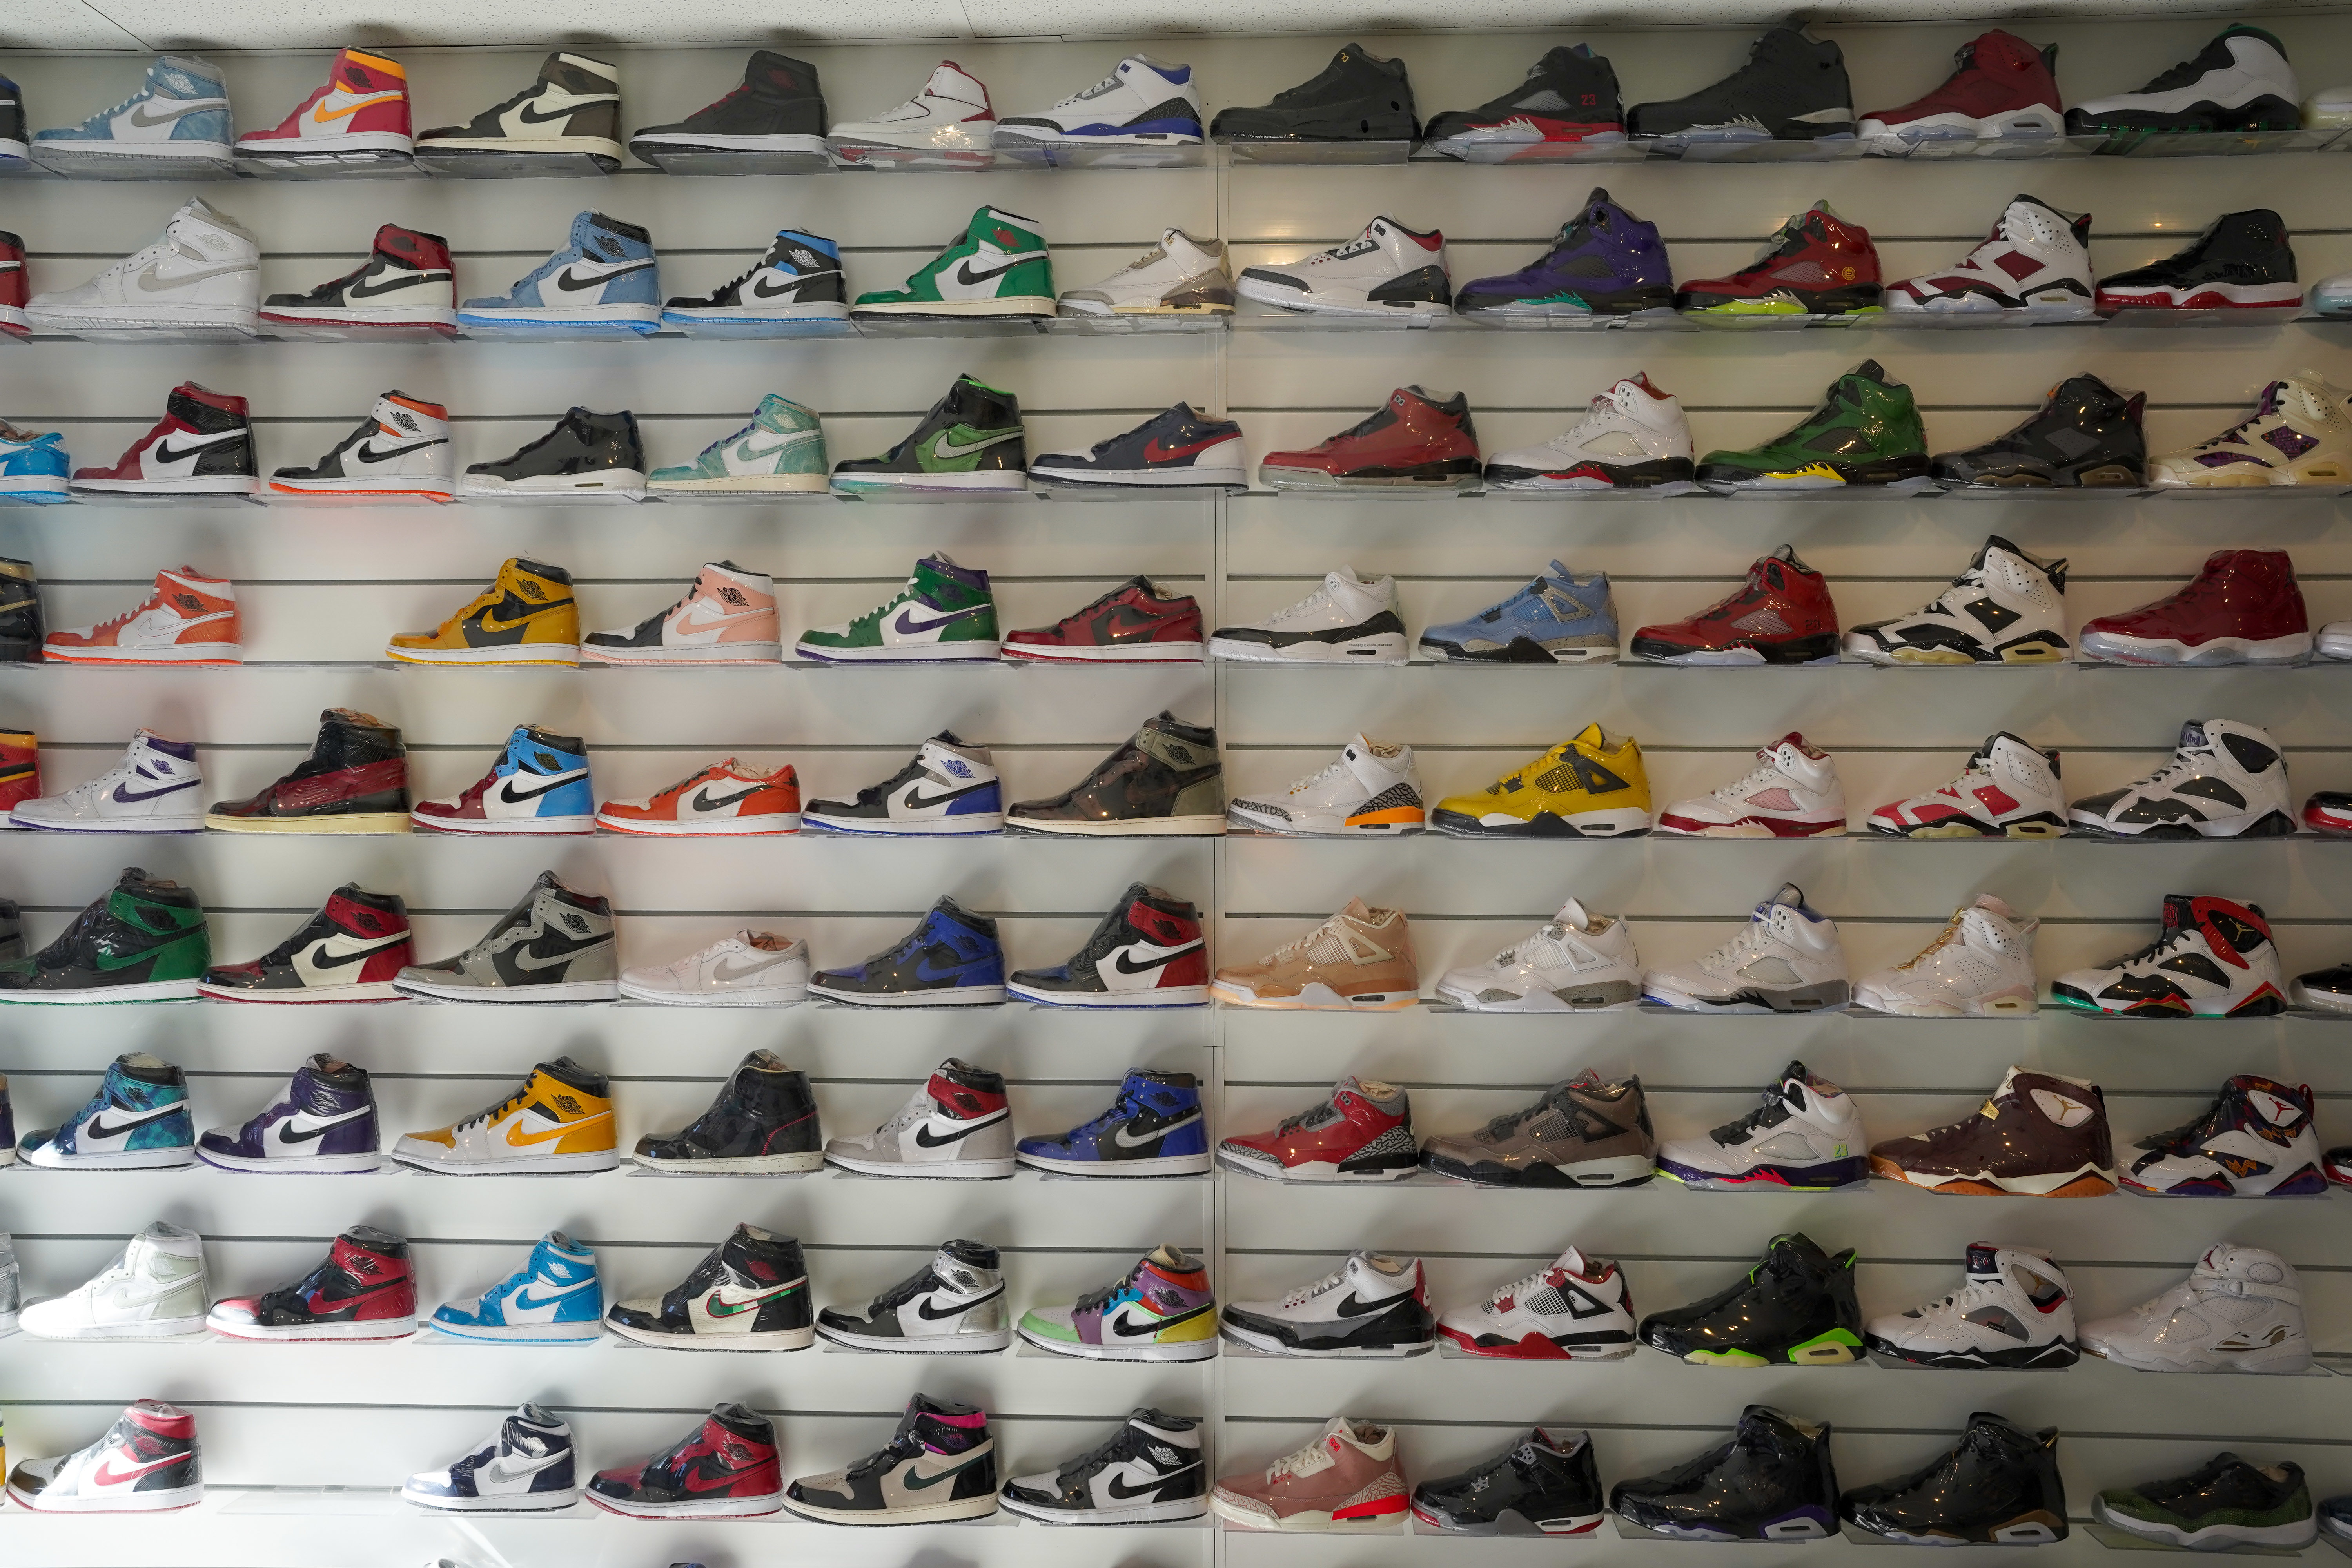 imitar Goma Polvoriento The 10 best sneaker stores in Philadelphia